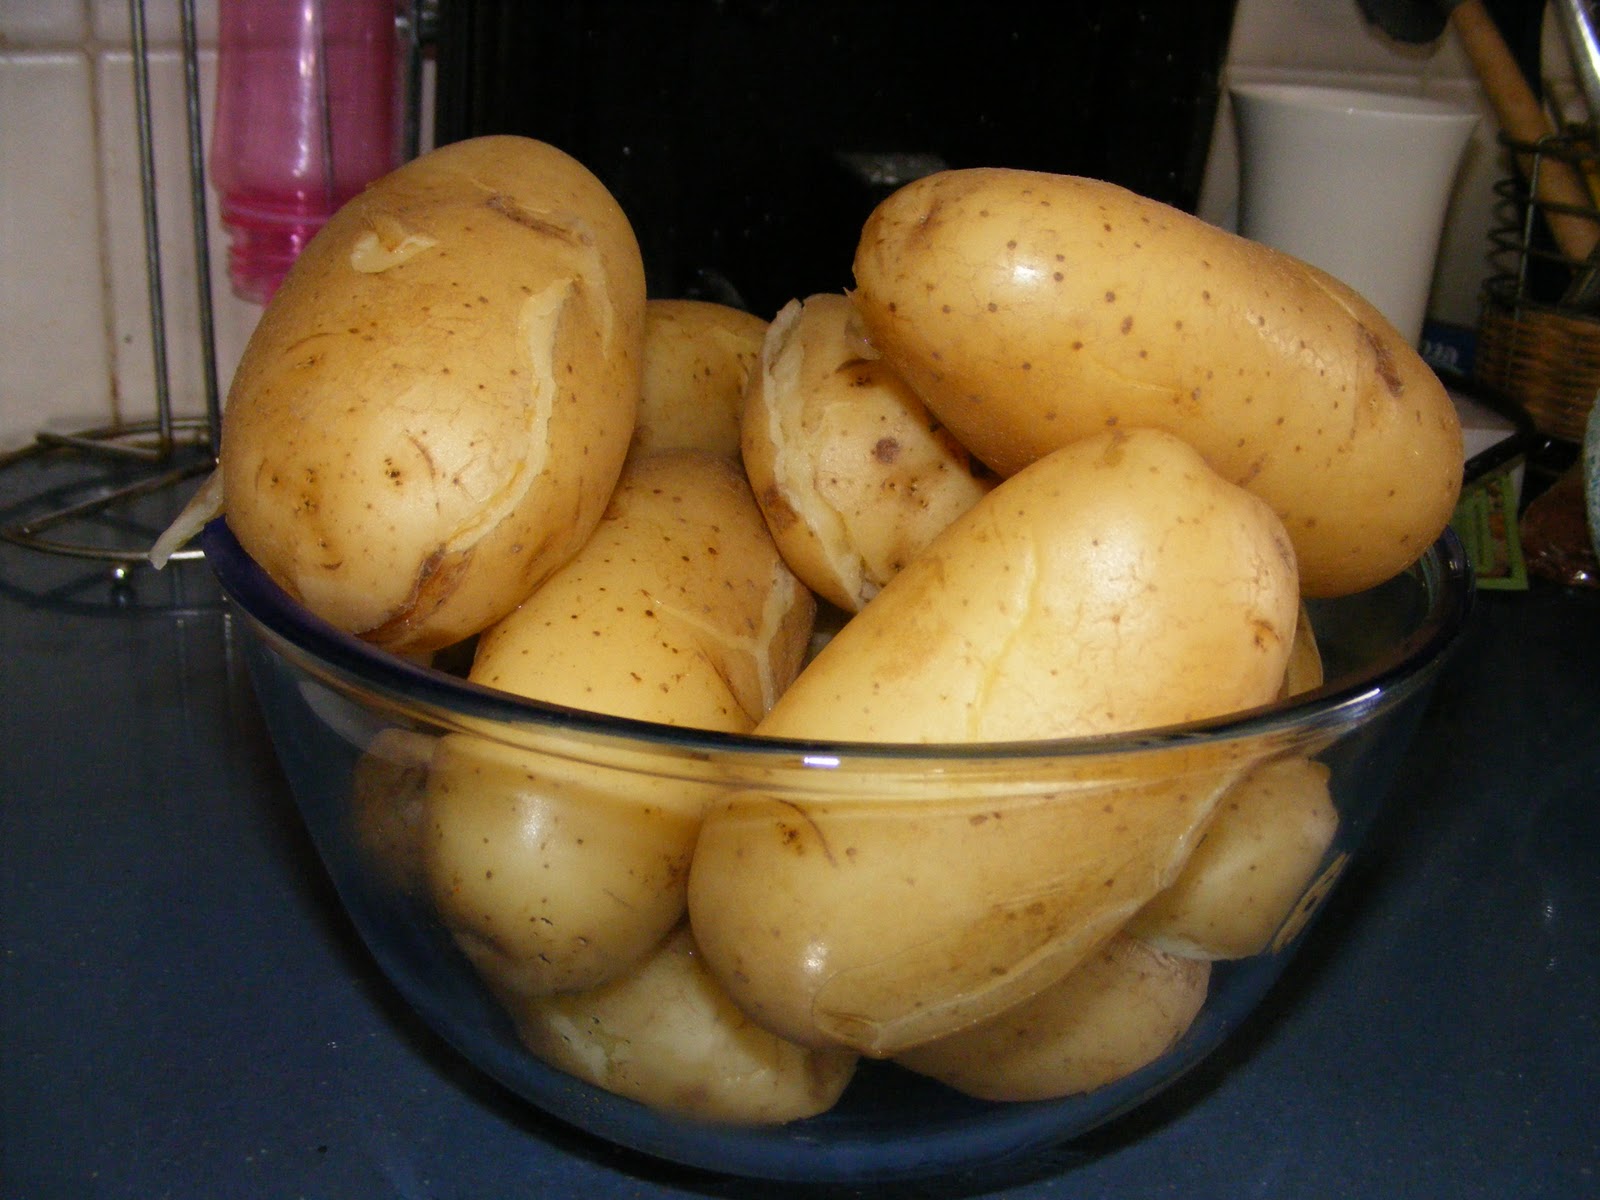 Картошка в мундире: как вкусно приготовить картофель чтобы он не разварился